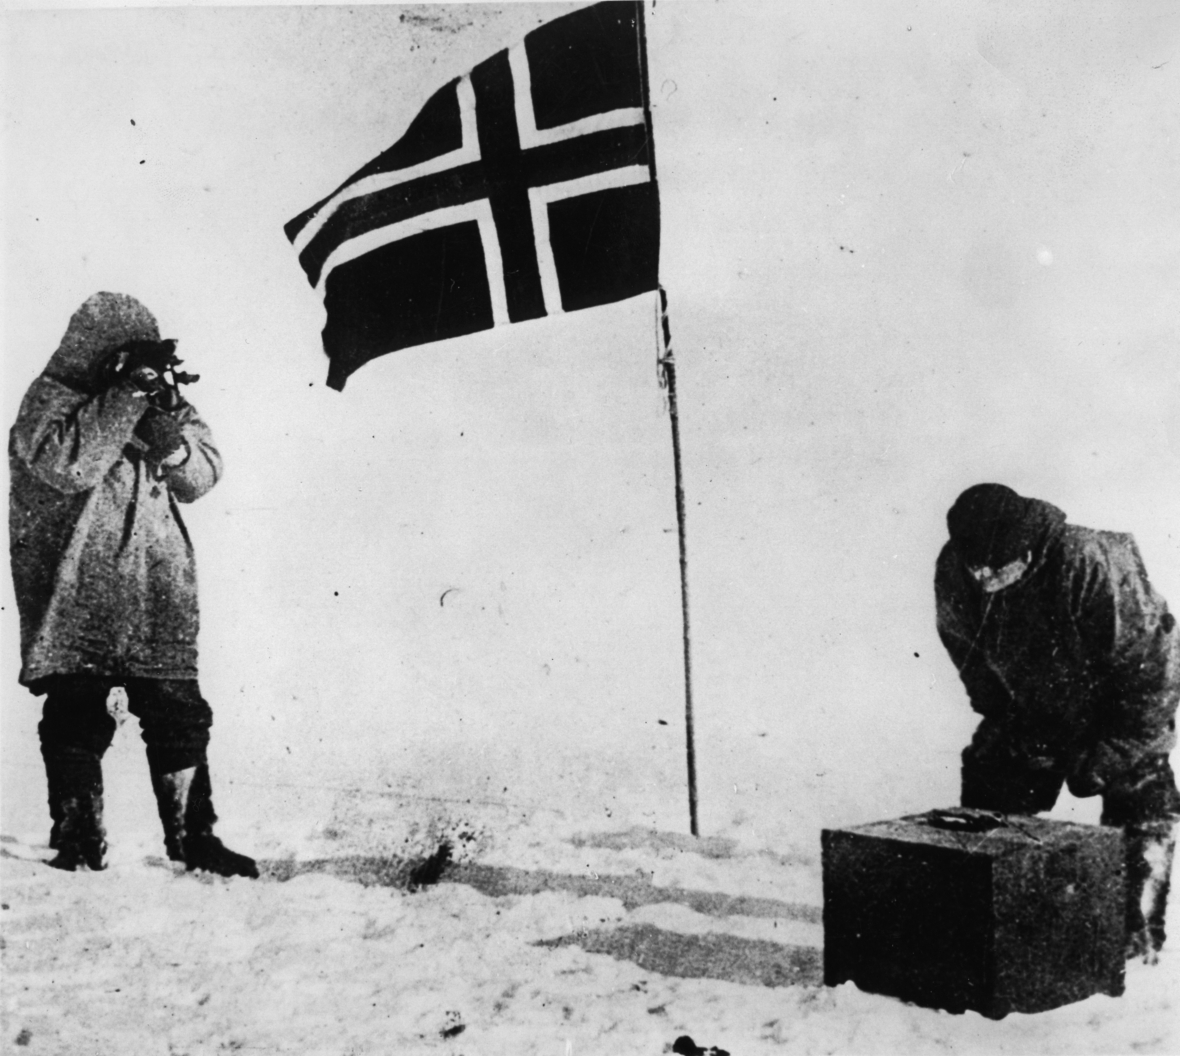 Ein historisches Bild: Die Flaggenhissung durch Amundsen am Südpol, 1911. 